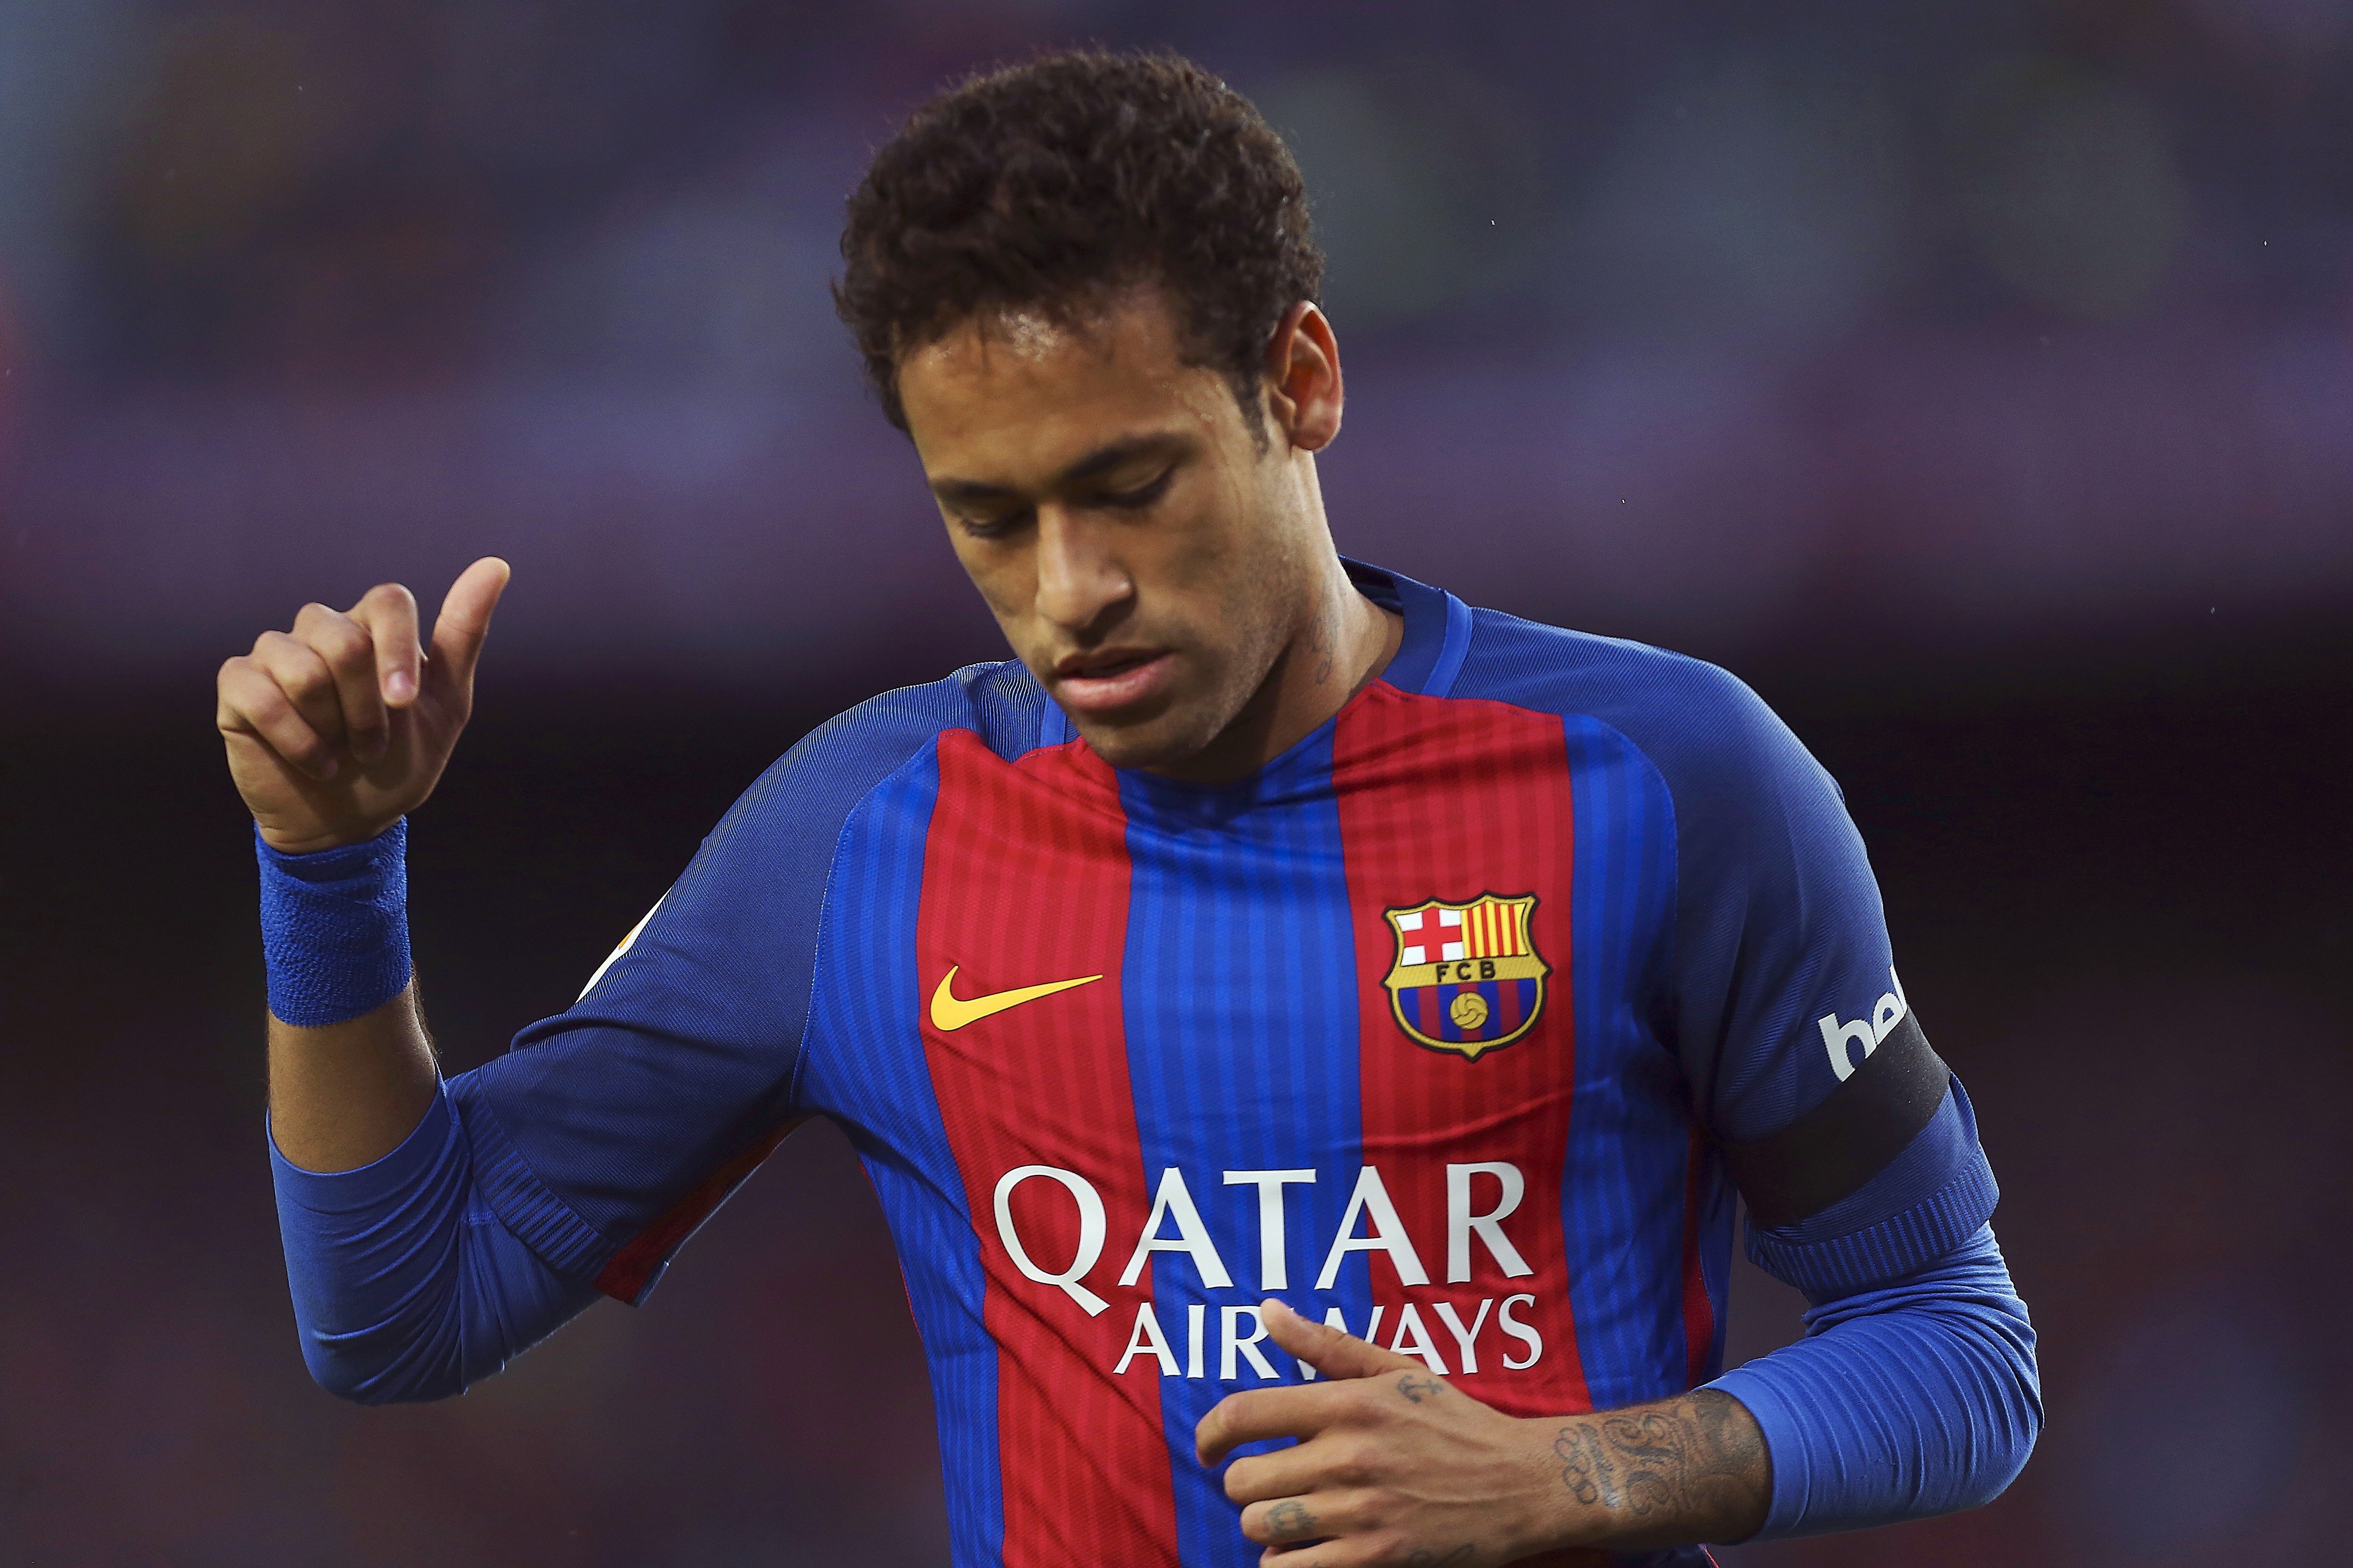 El Barça gana la batalla judicial contra el Santos por el traspaso de Neymar